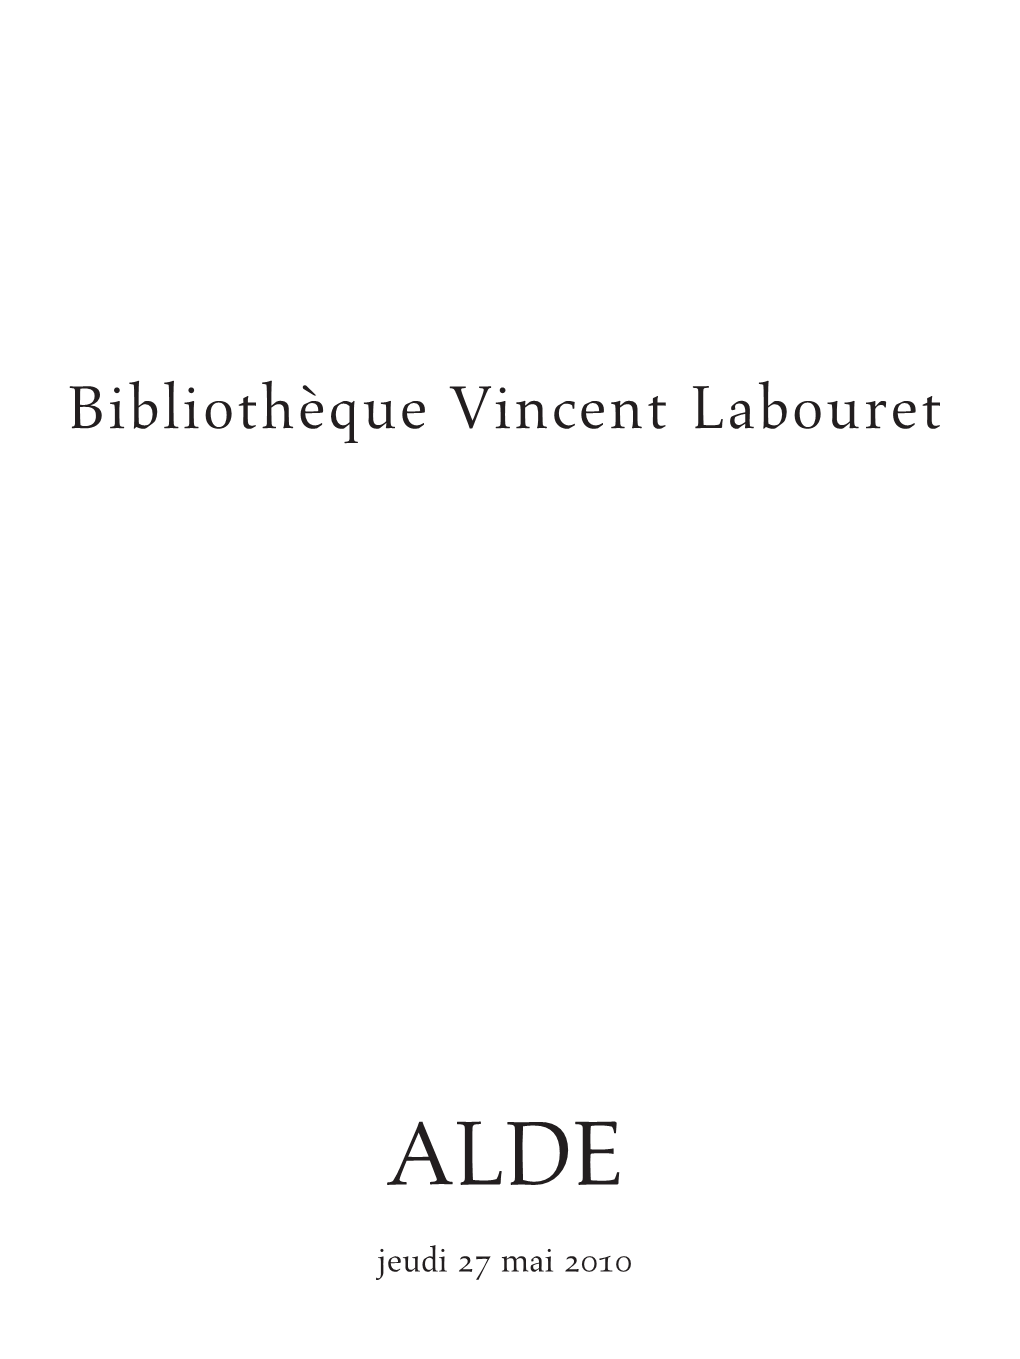 Bibliothèque Vincent Labouret ALDE Bibliothèque Vincent Labouret Bibliothèque Vincent Jeudi ALDE 27 Mai 2010 6/04/10 9:48:18